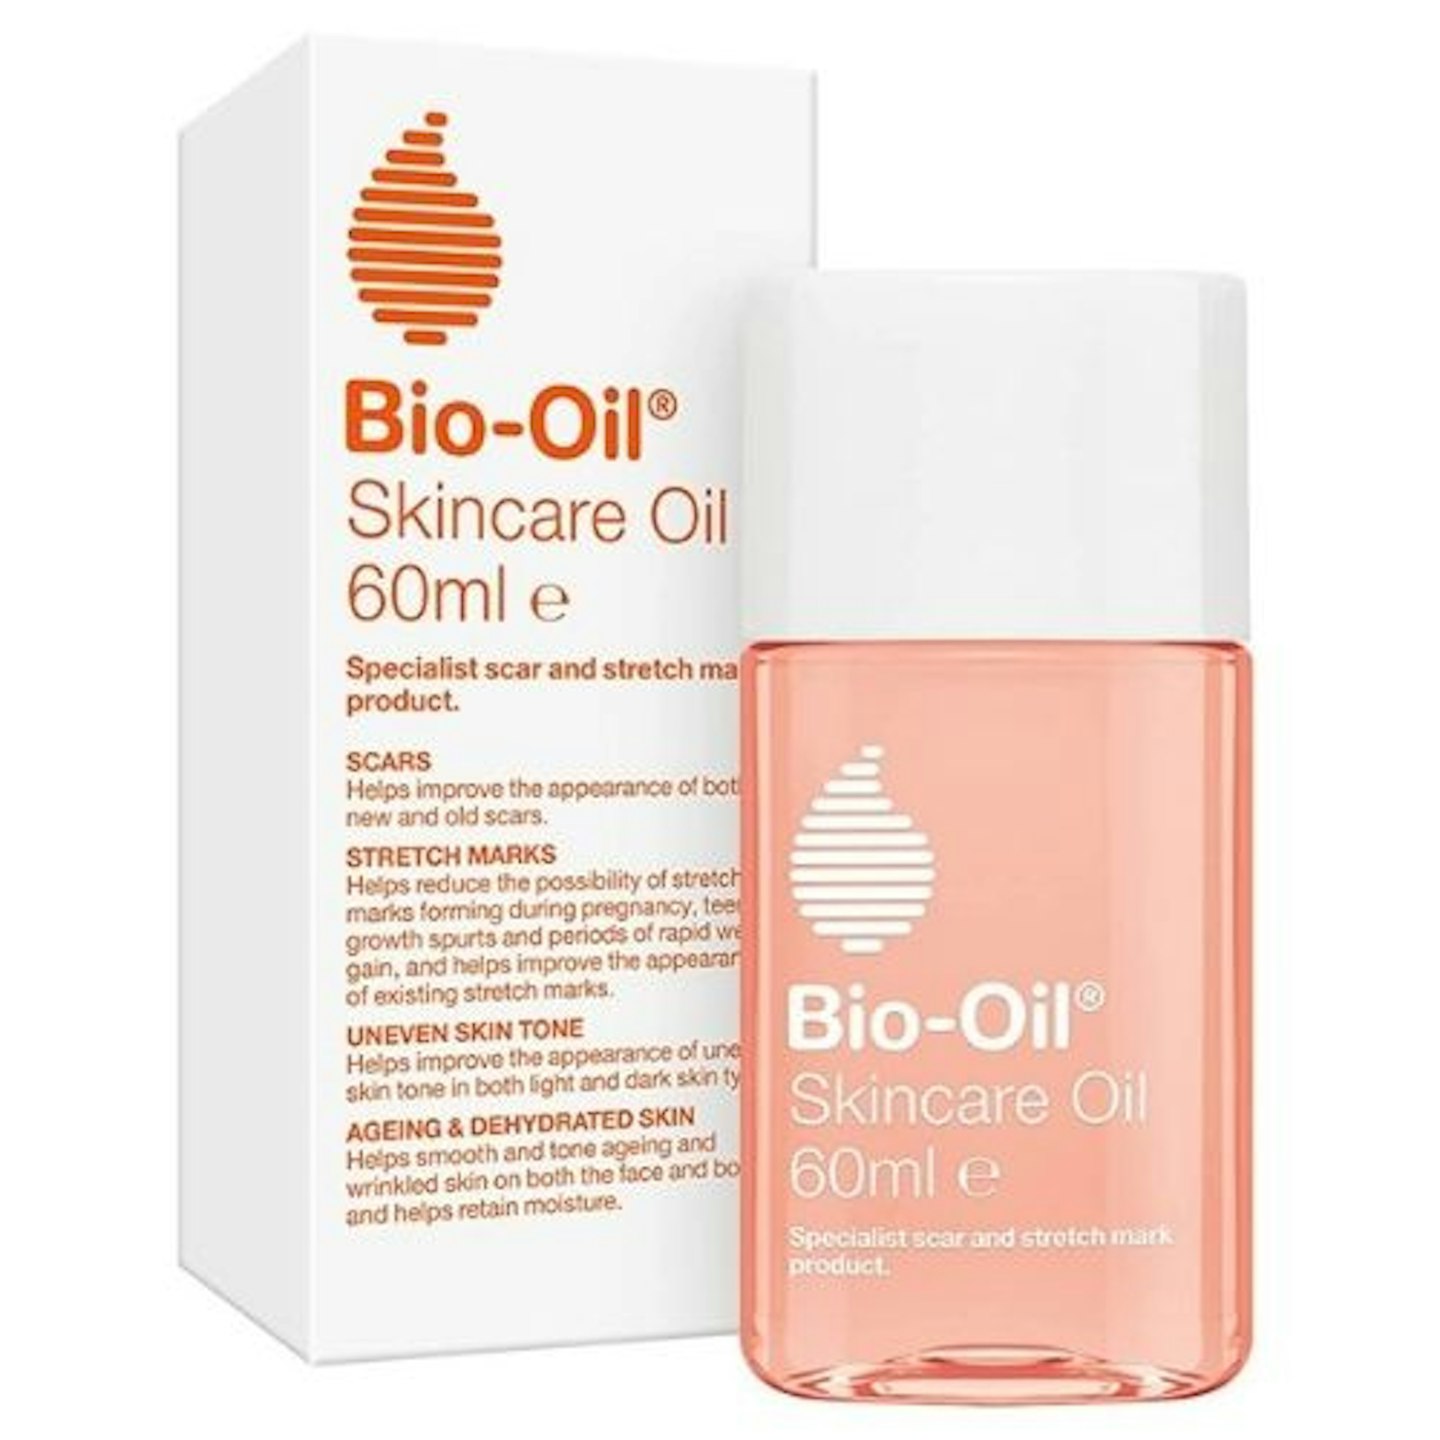 Bio-Oil-Skincare-Oil 